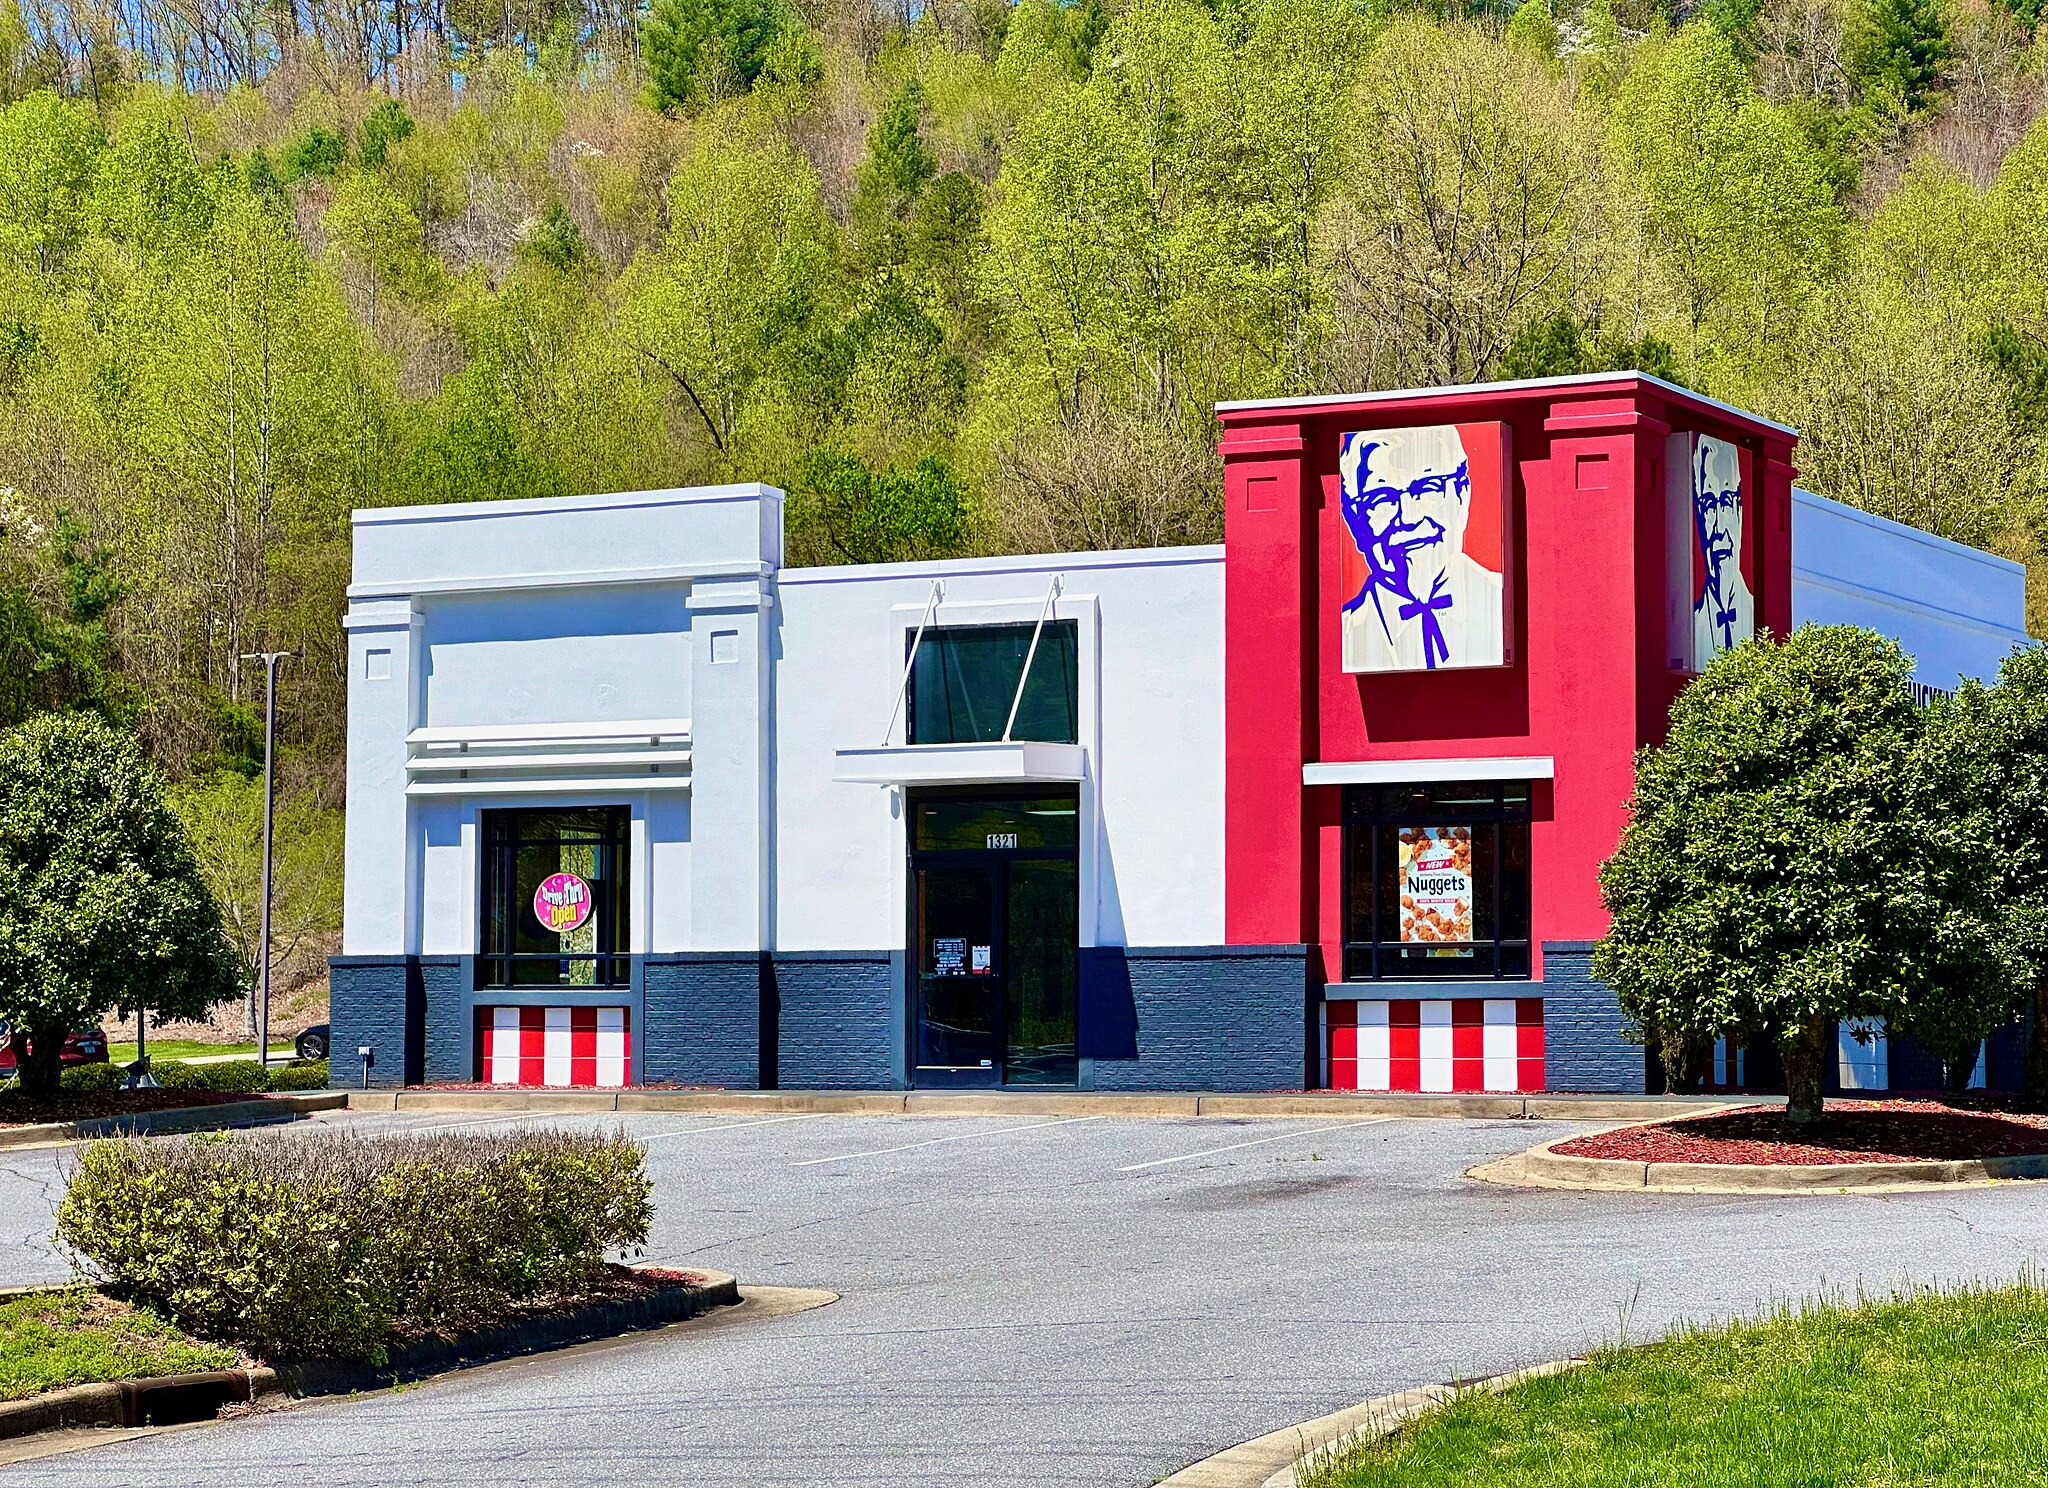 A modern KFC restaurant in Murphy, North Carolina